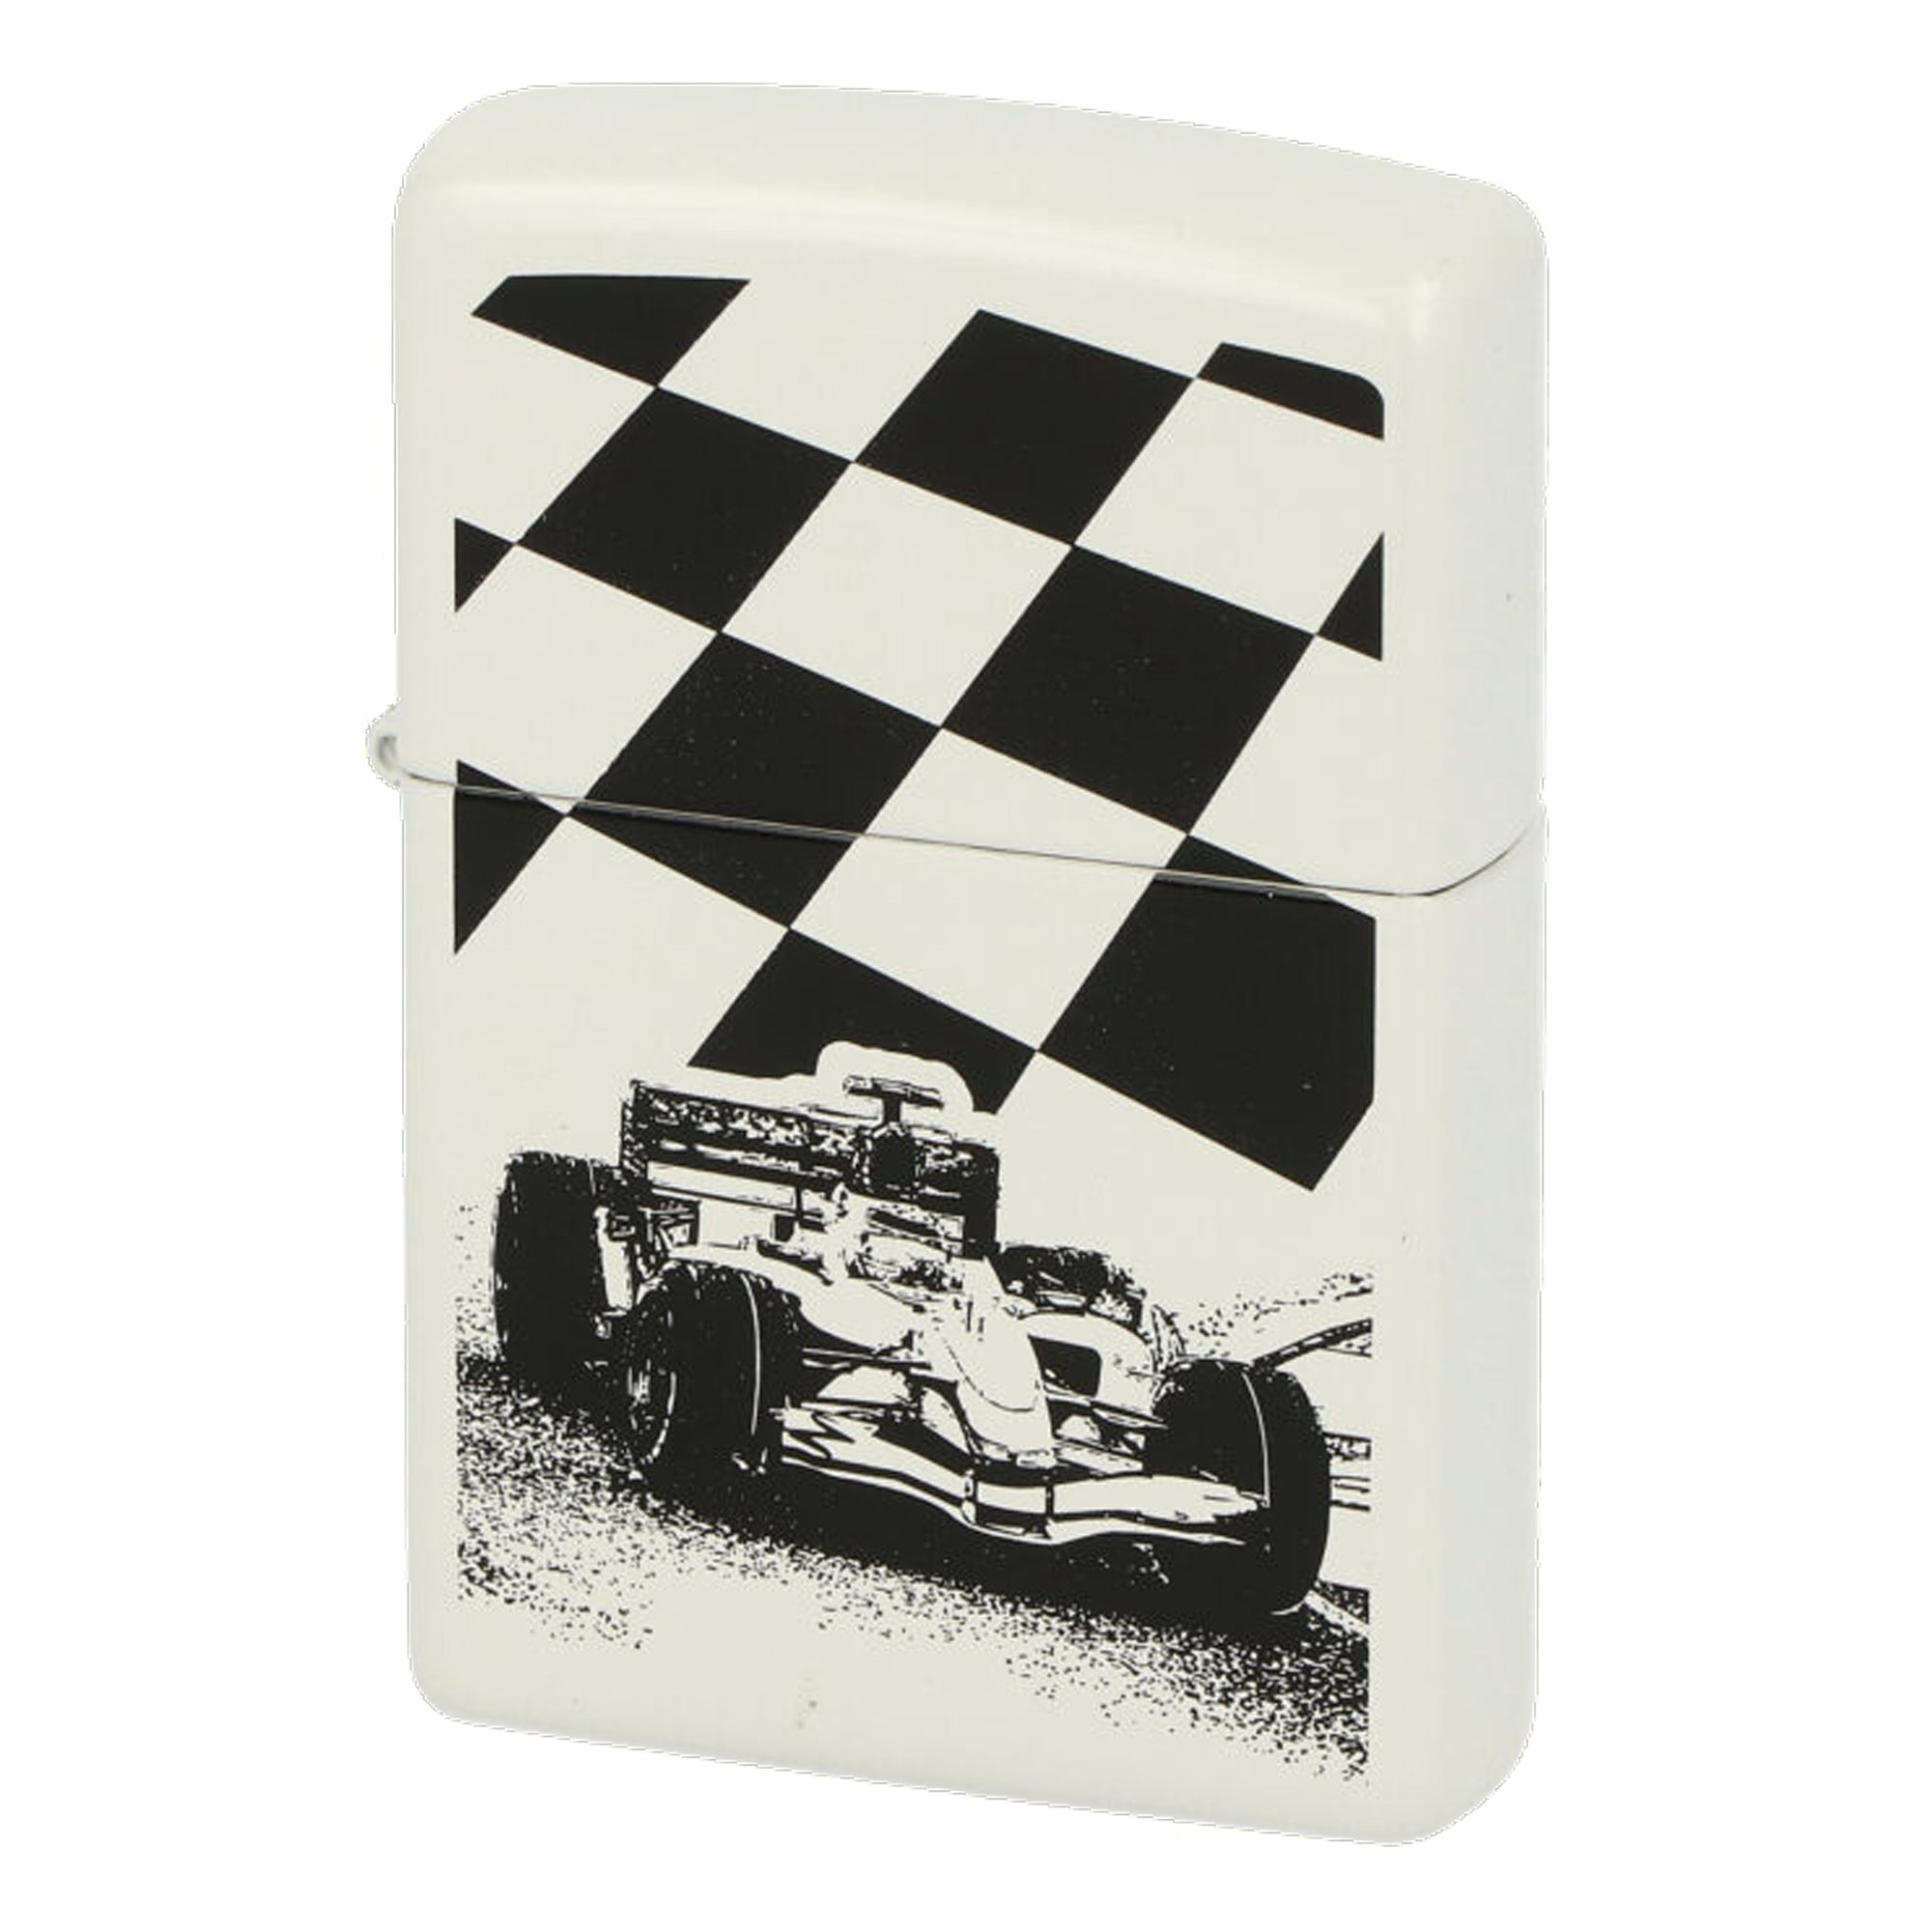 Dieses Zippo Formel 1 zeigt den Rennwagen mit der Zielflagge im Hintergrund. Ein schönes Basic White Zippo mit einem schwarz-weiss Color Image.